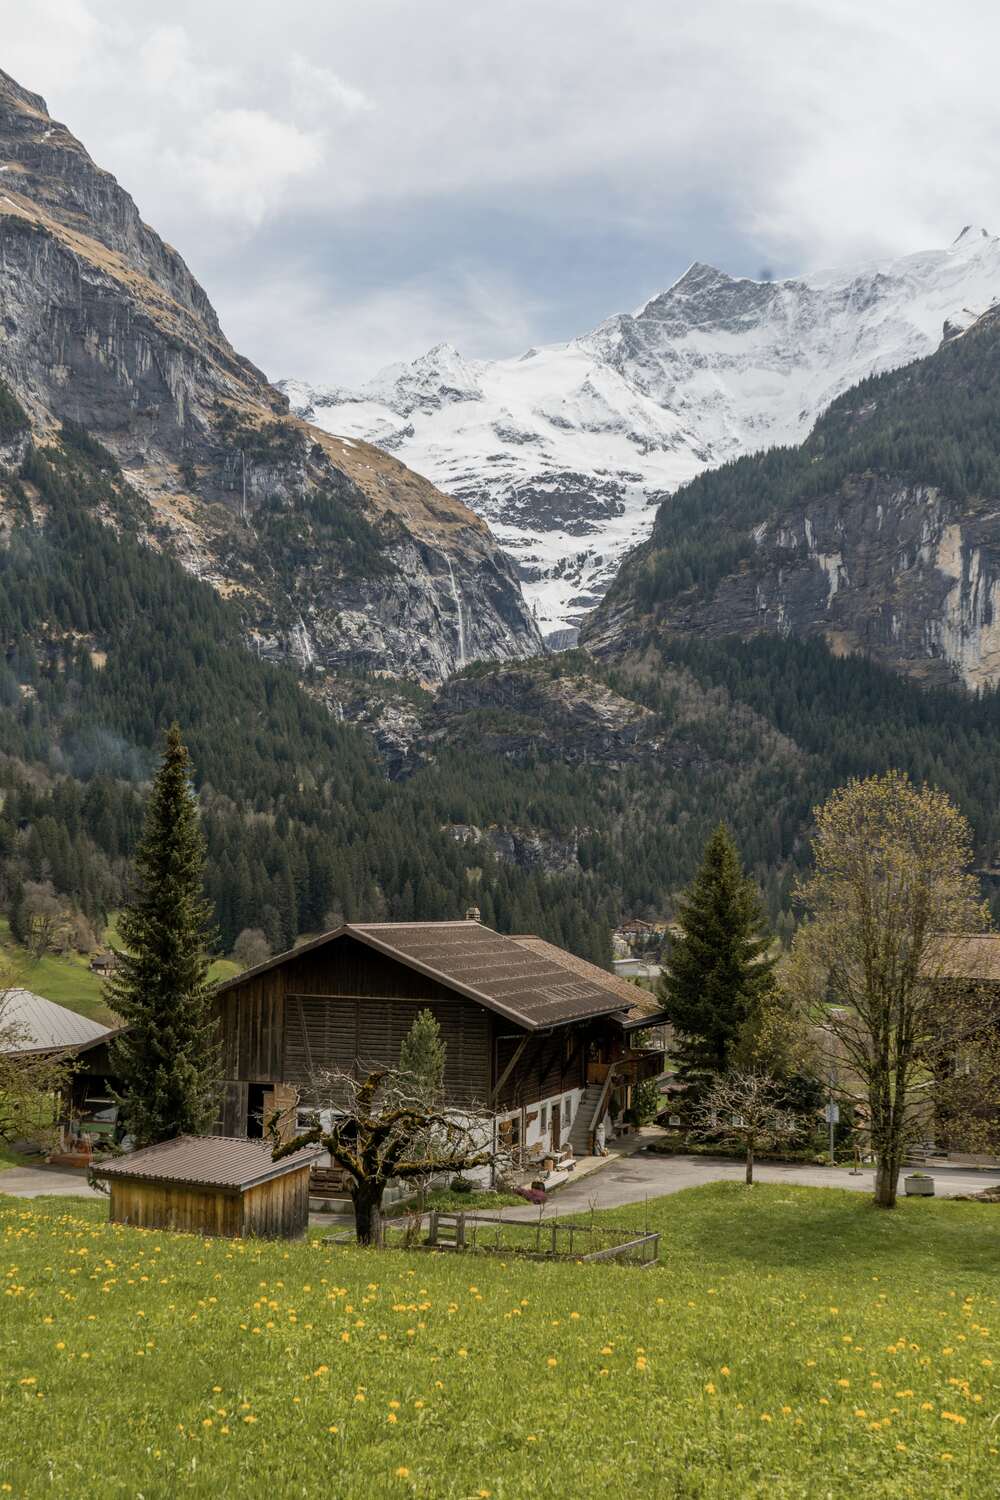 Grindelwald in Switzerland